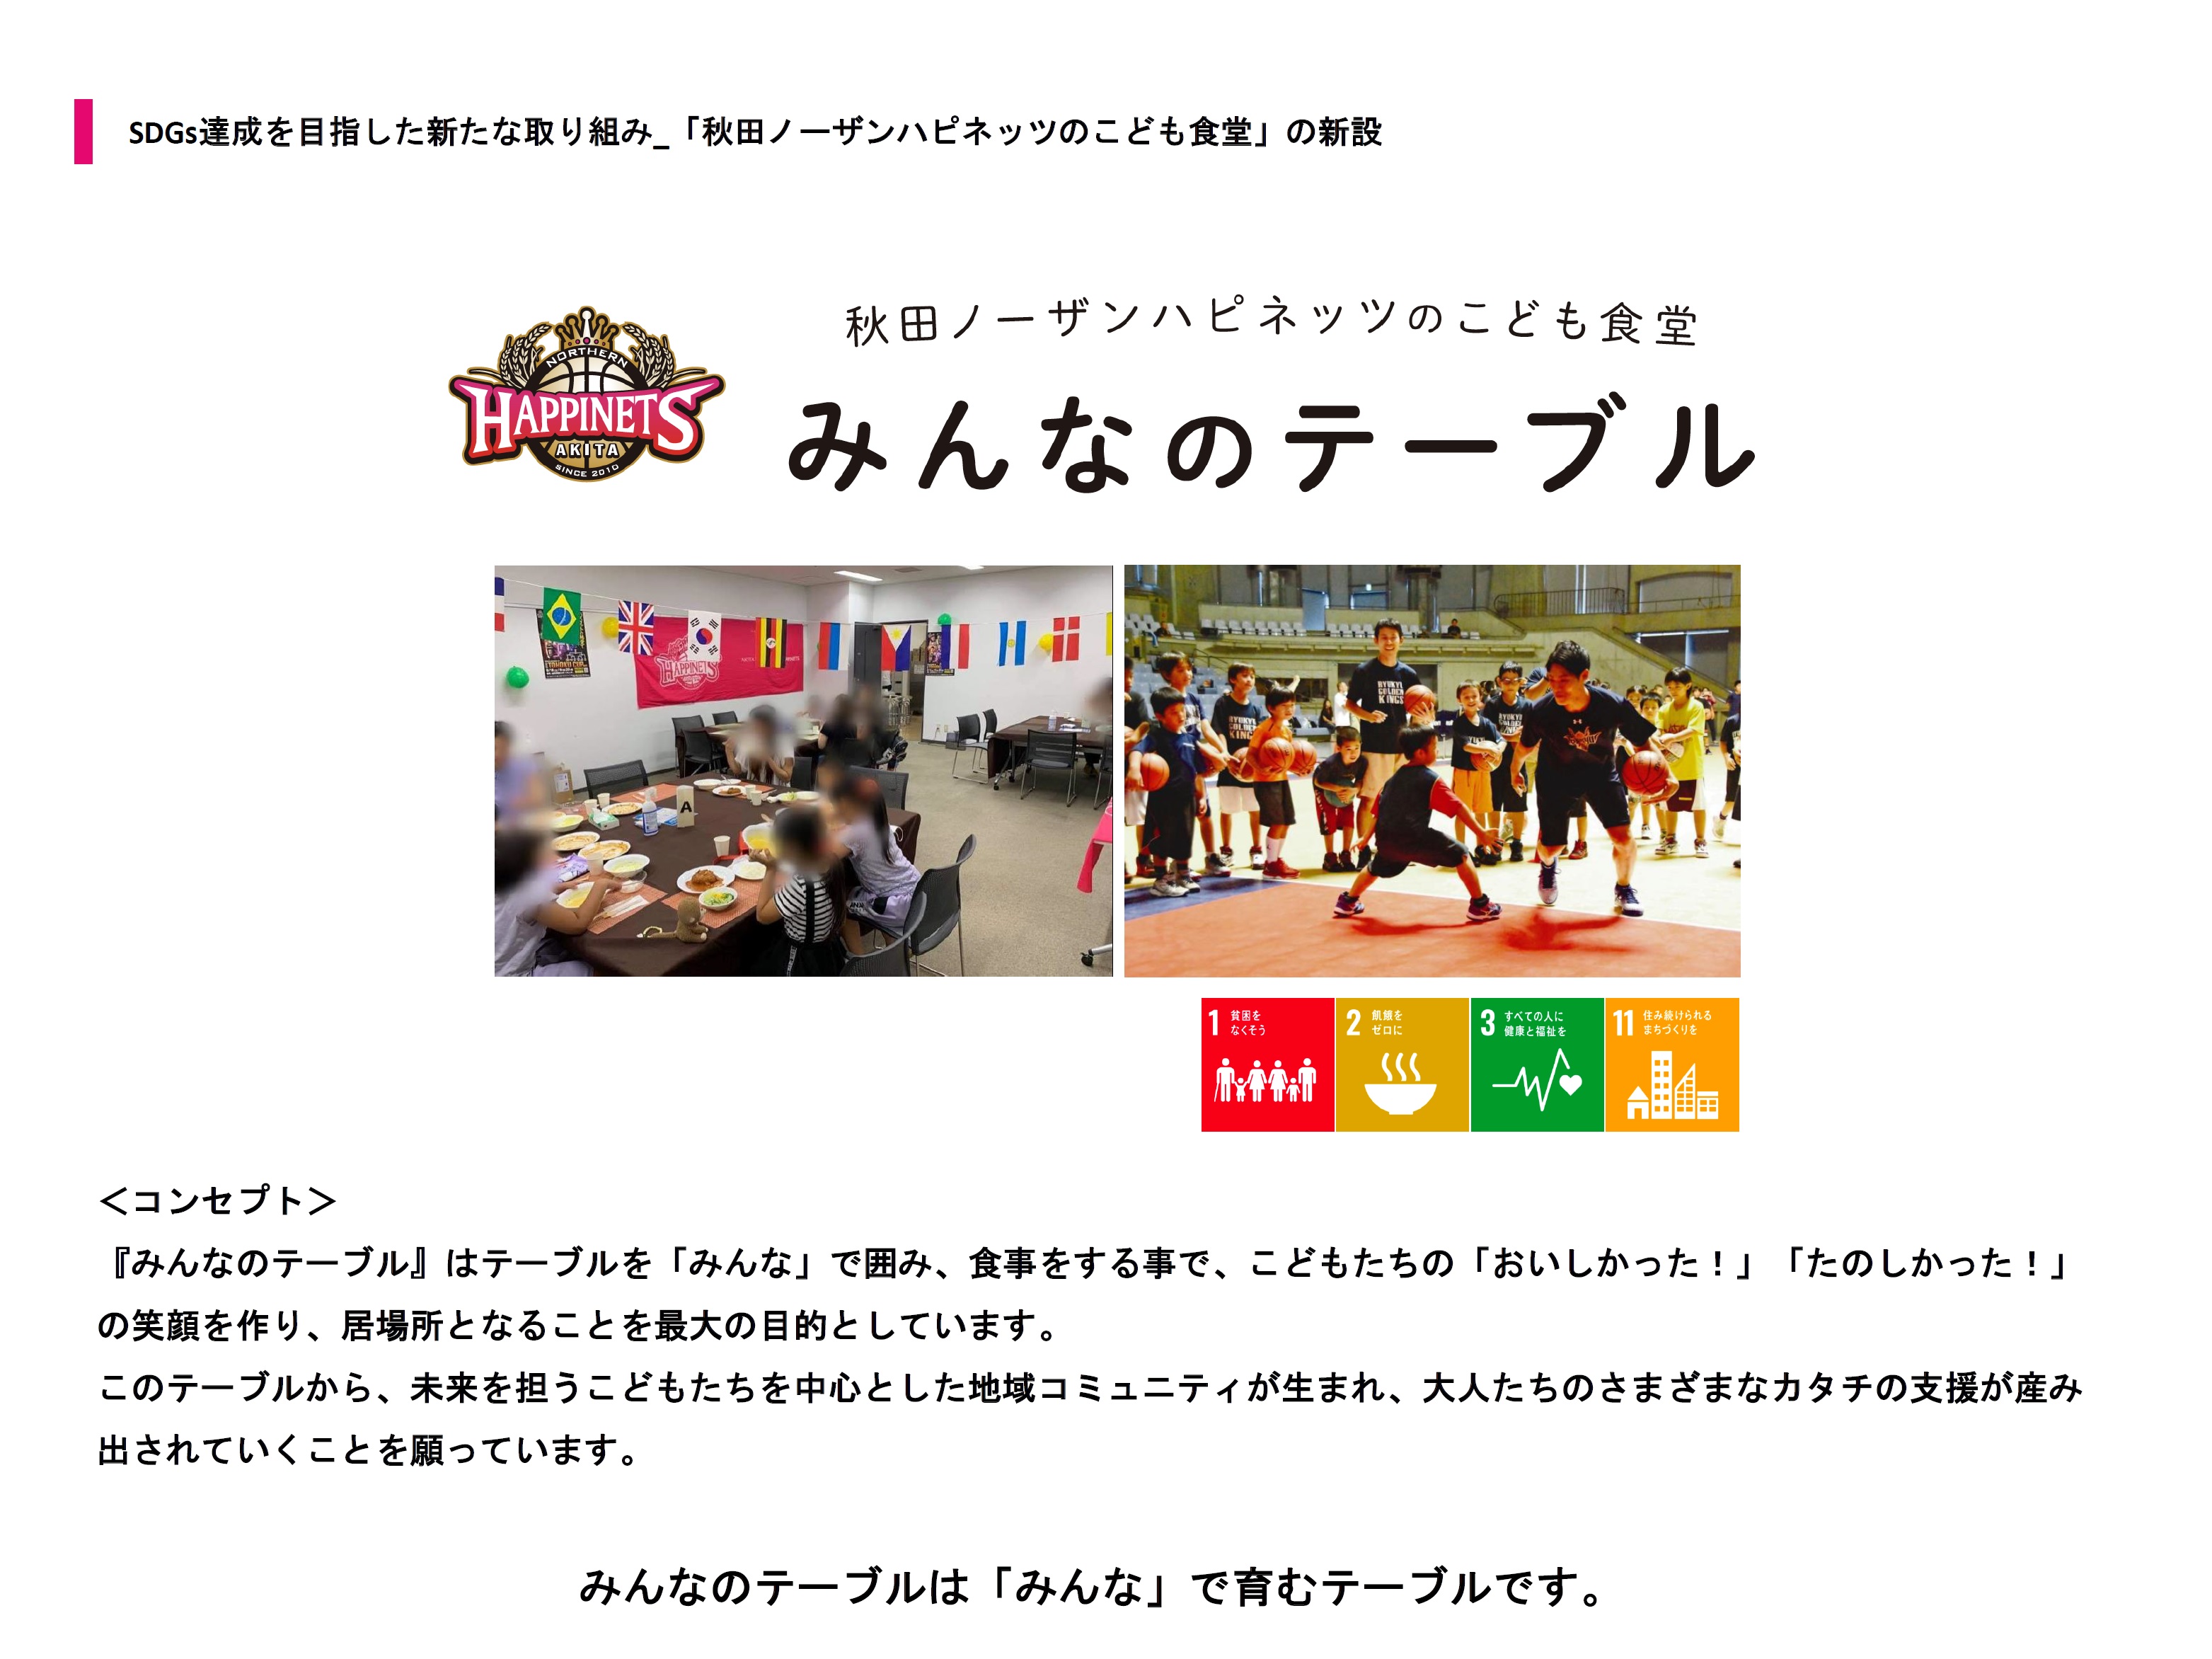 〈国内プロスポーツチーム初〉秋田ノーザンハピネッツが常設の子ども食堂を新設のサブ画像1